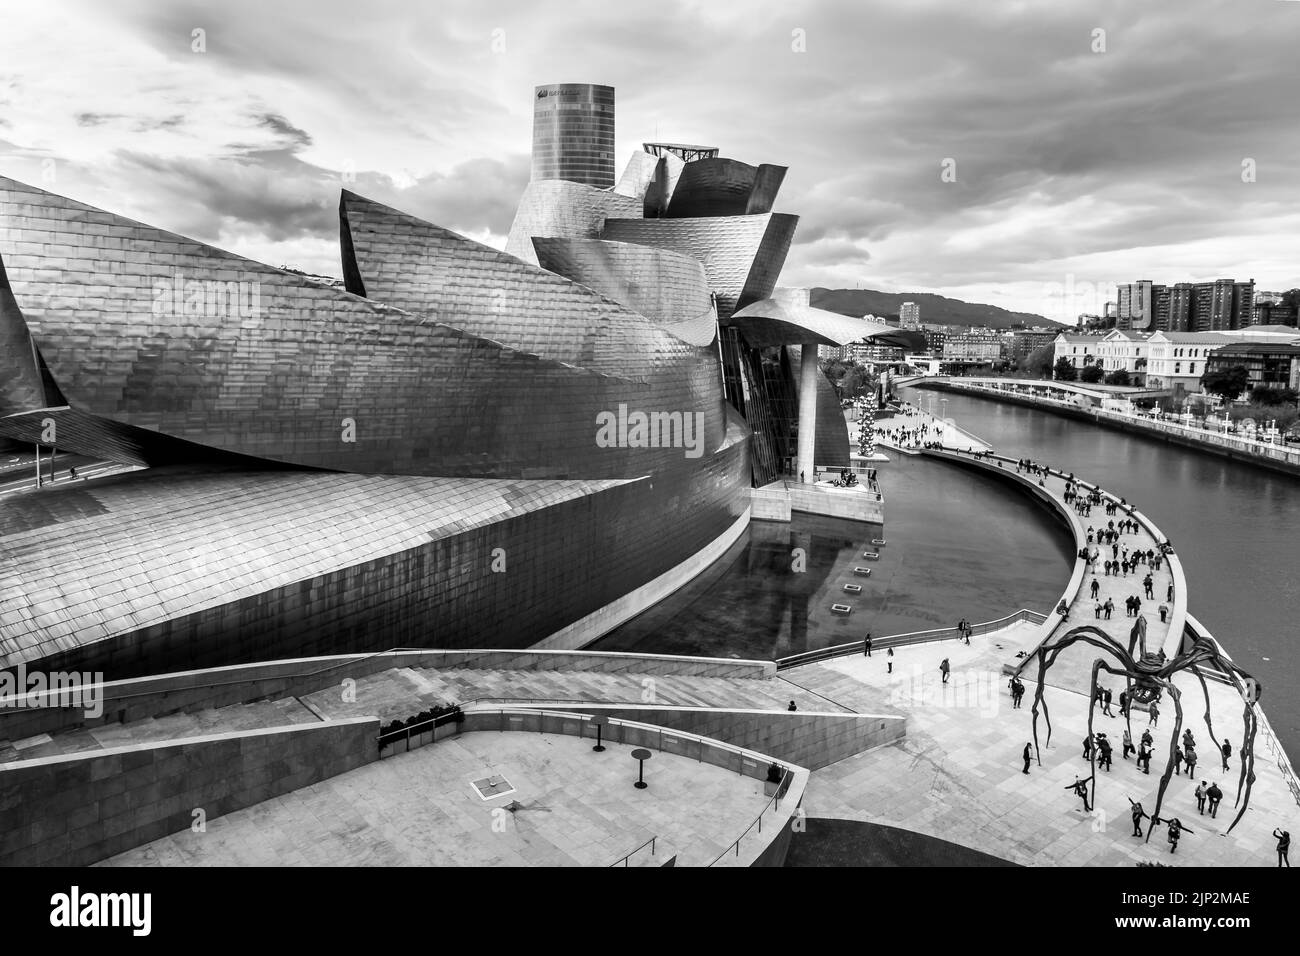 Ville de Bilbao, monochrome de son célèbre musée d'art sur les rives de l'estuaire. Espagne. Banque D'Images